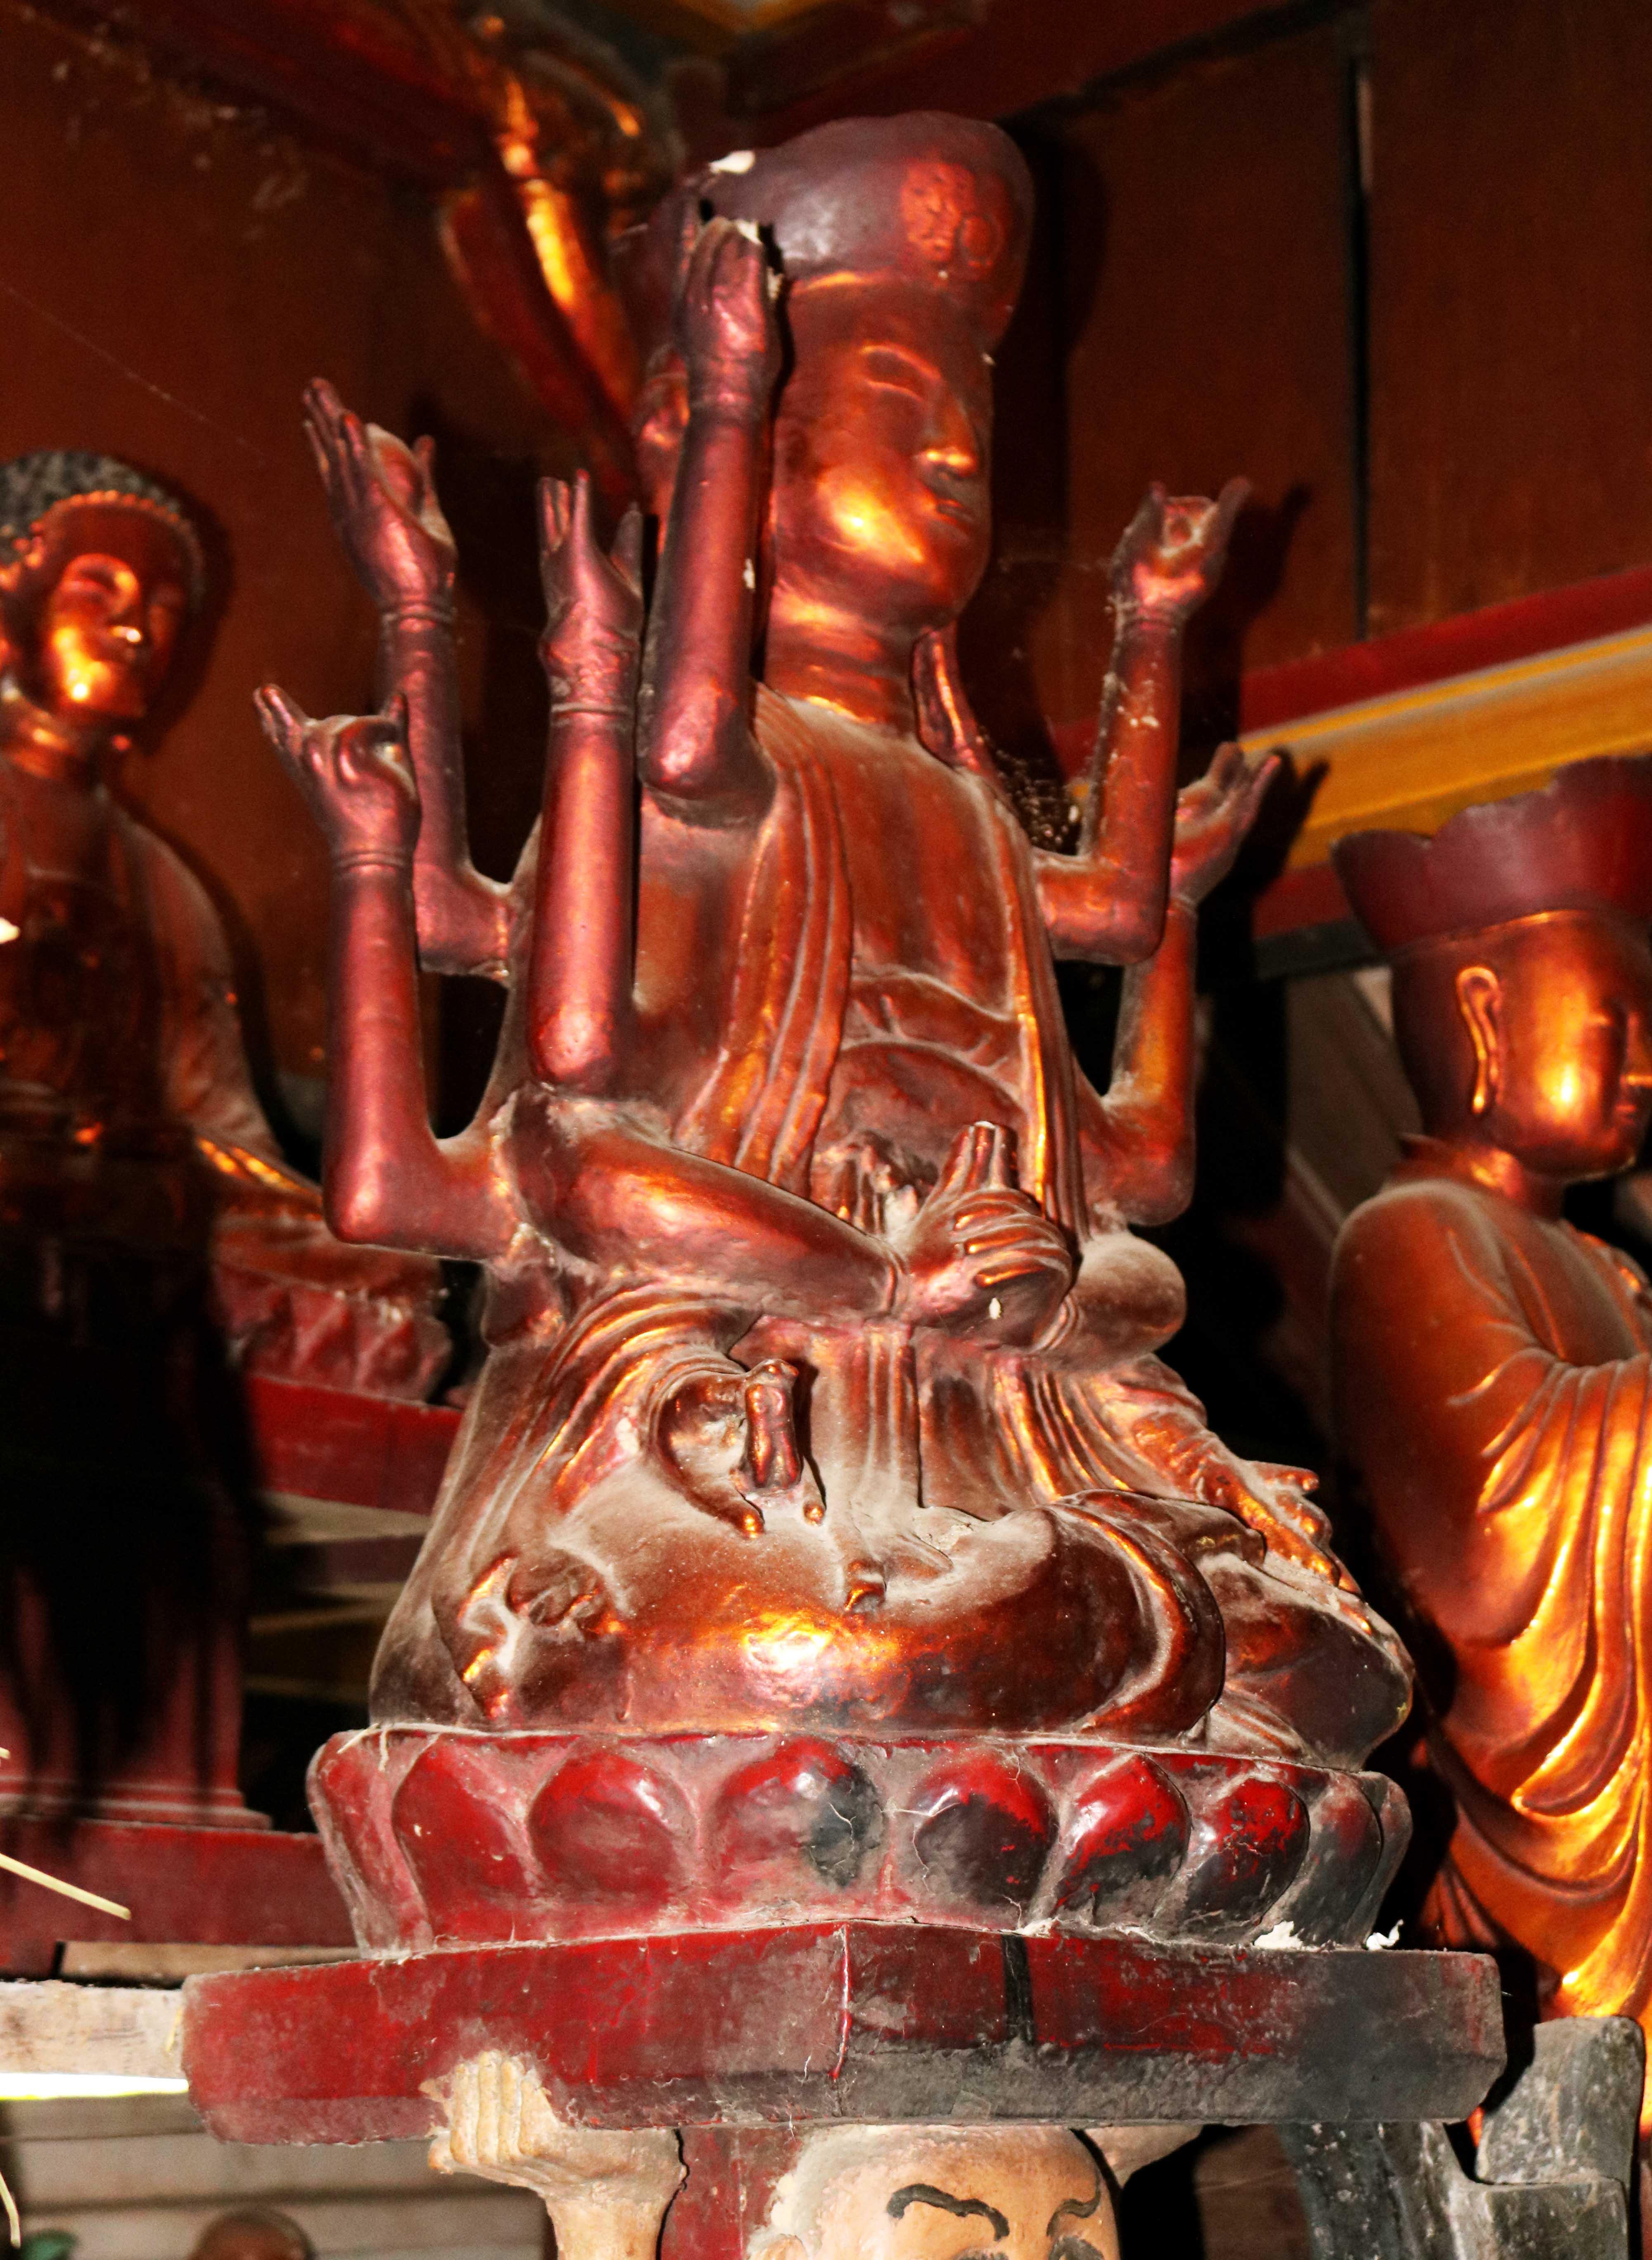 Trong số tượng cổ này, tượng Phật bà Quan âm 12 tay hay còn gọi là tượng “đầu người đội Phật” là độc đáo nhất được thờ ở vị trí trang trọng trong chùa. Tượng cao khoảng 1,2m, gồm đầu tượng đội mũ hoa, thân tượng tạc theo kiểu ngồi thiền trên tòa sen, đội tượng là một đầu quỷ hình người dữ tơn có 2 cánh tay nâng tòa sen. 